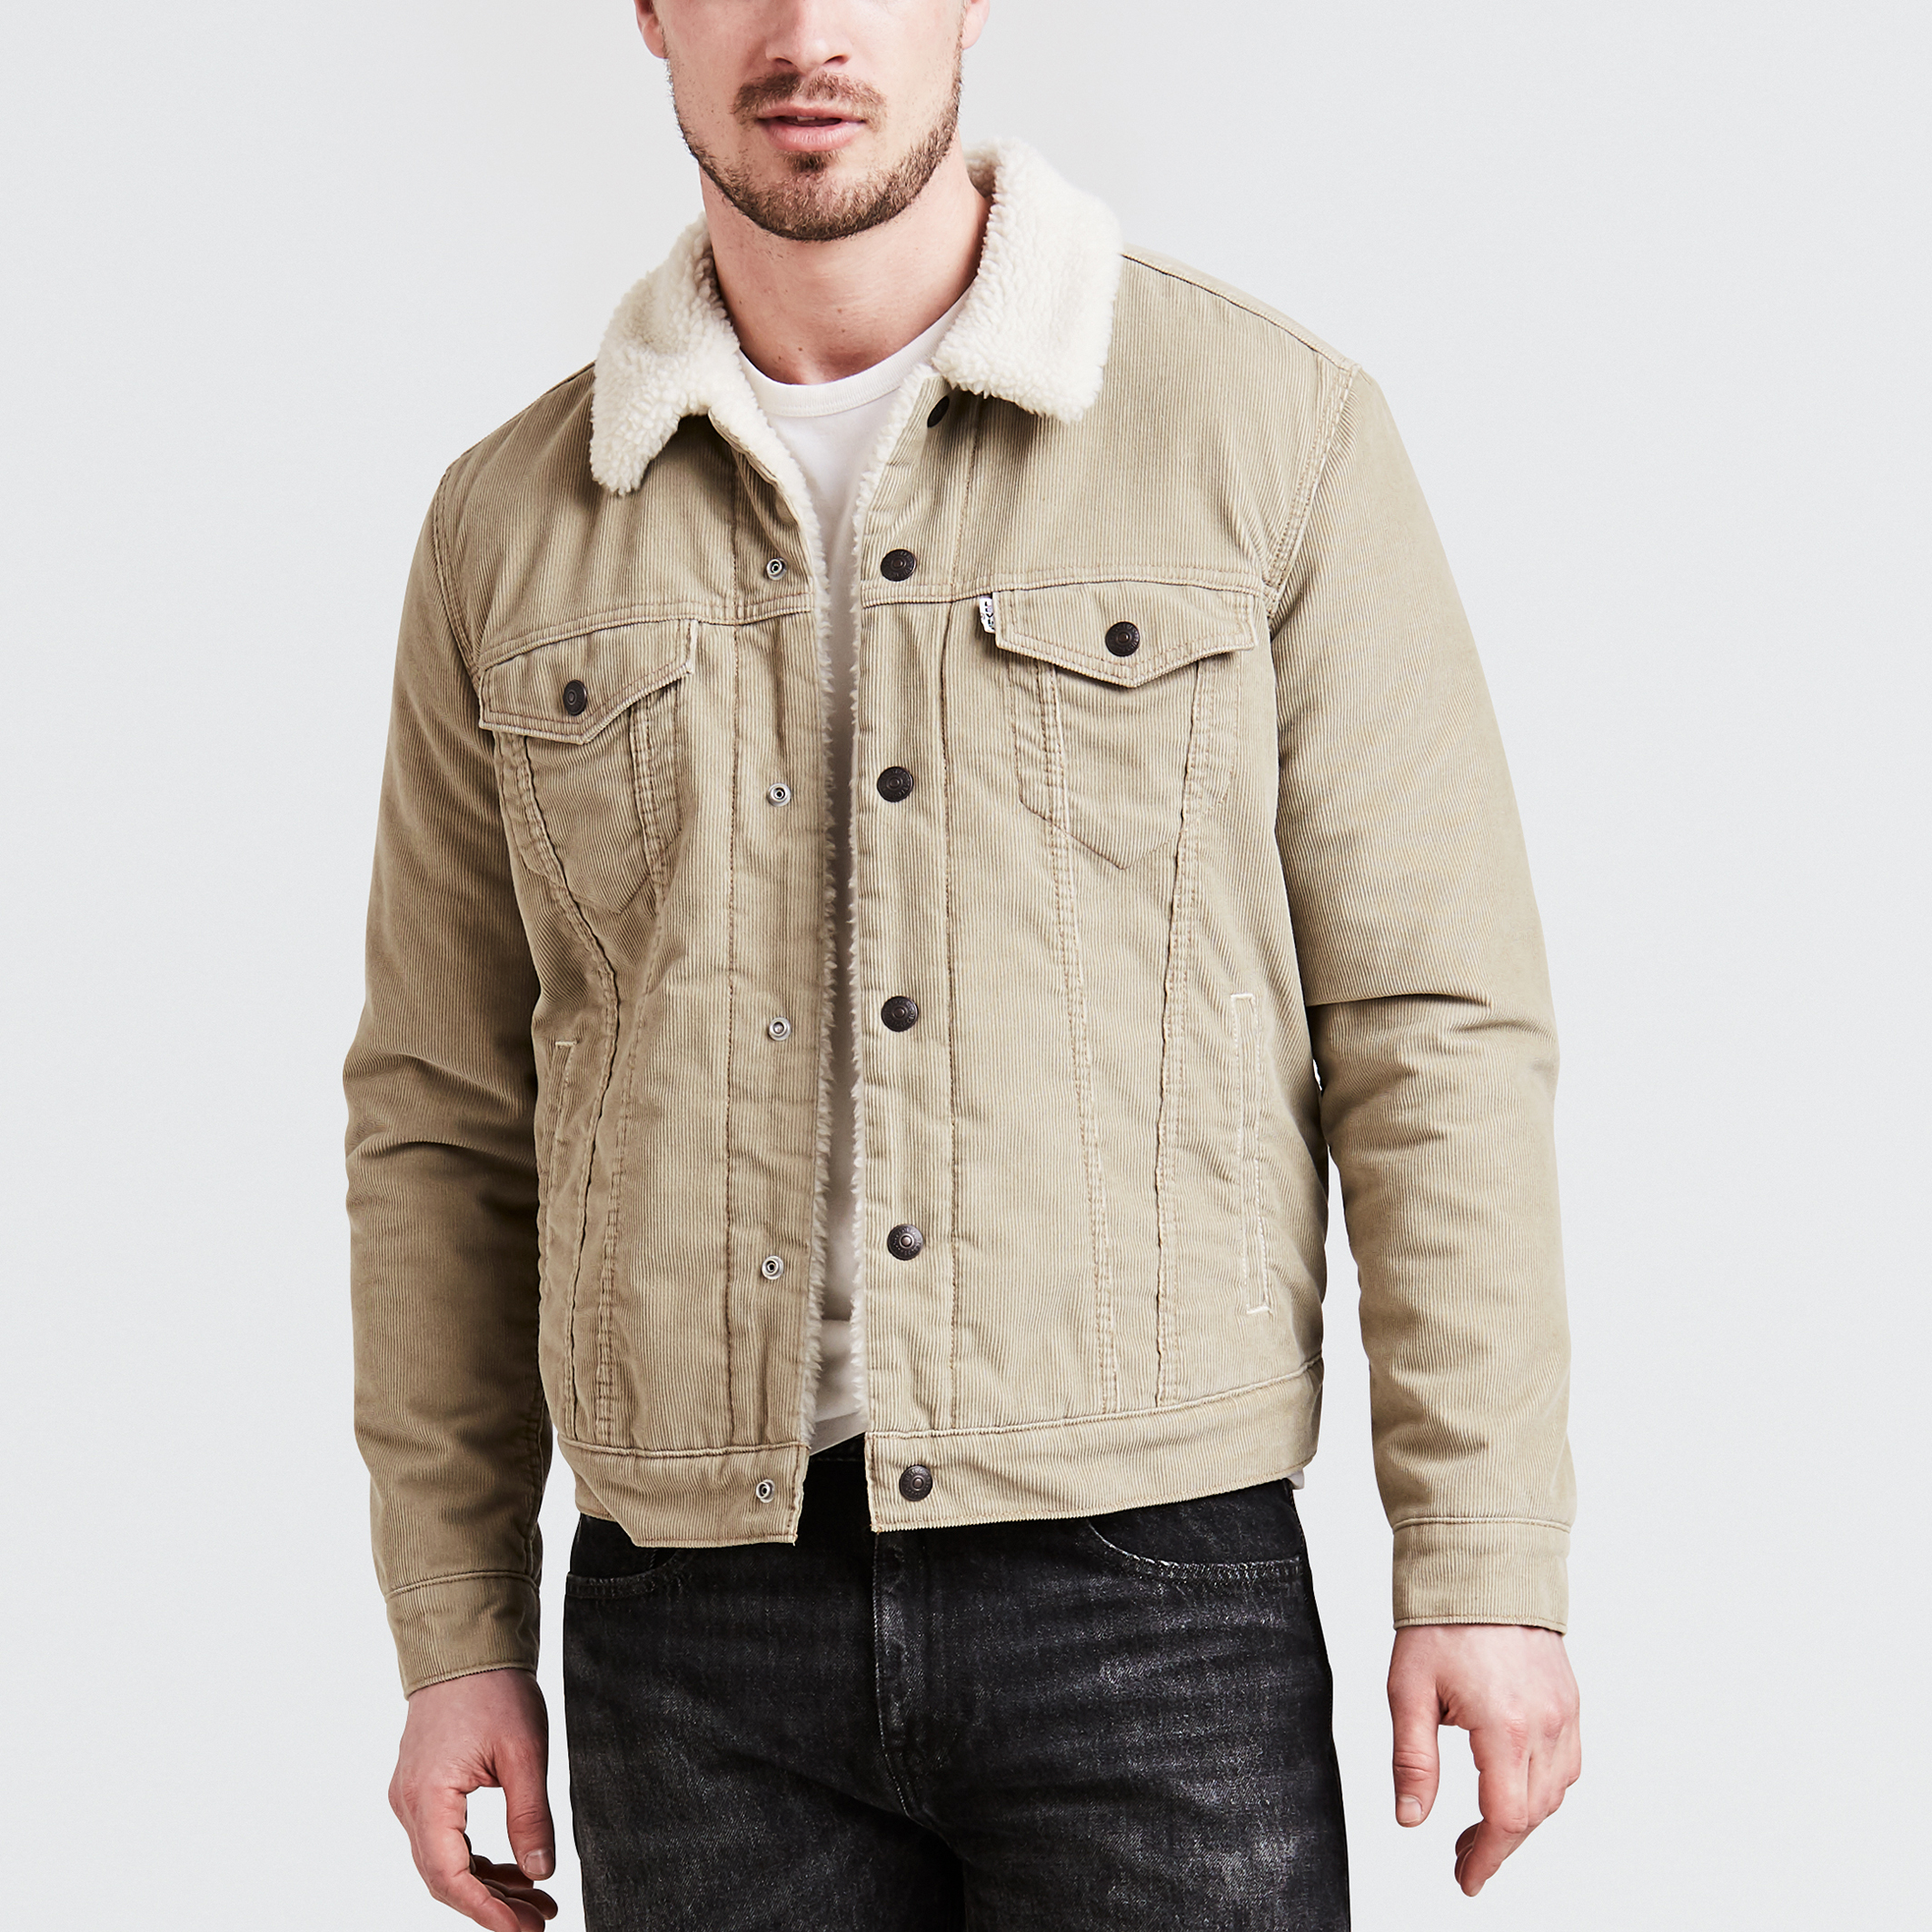 Sherpa corduroy trucker jacket with faux sheepskin lining , beige, Levi's |  La Redoute